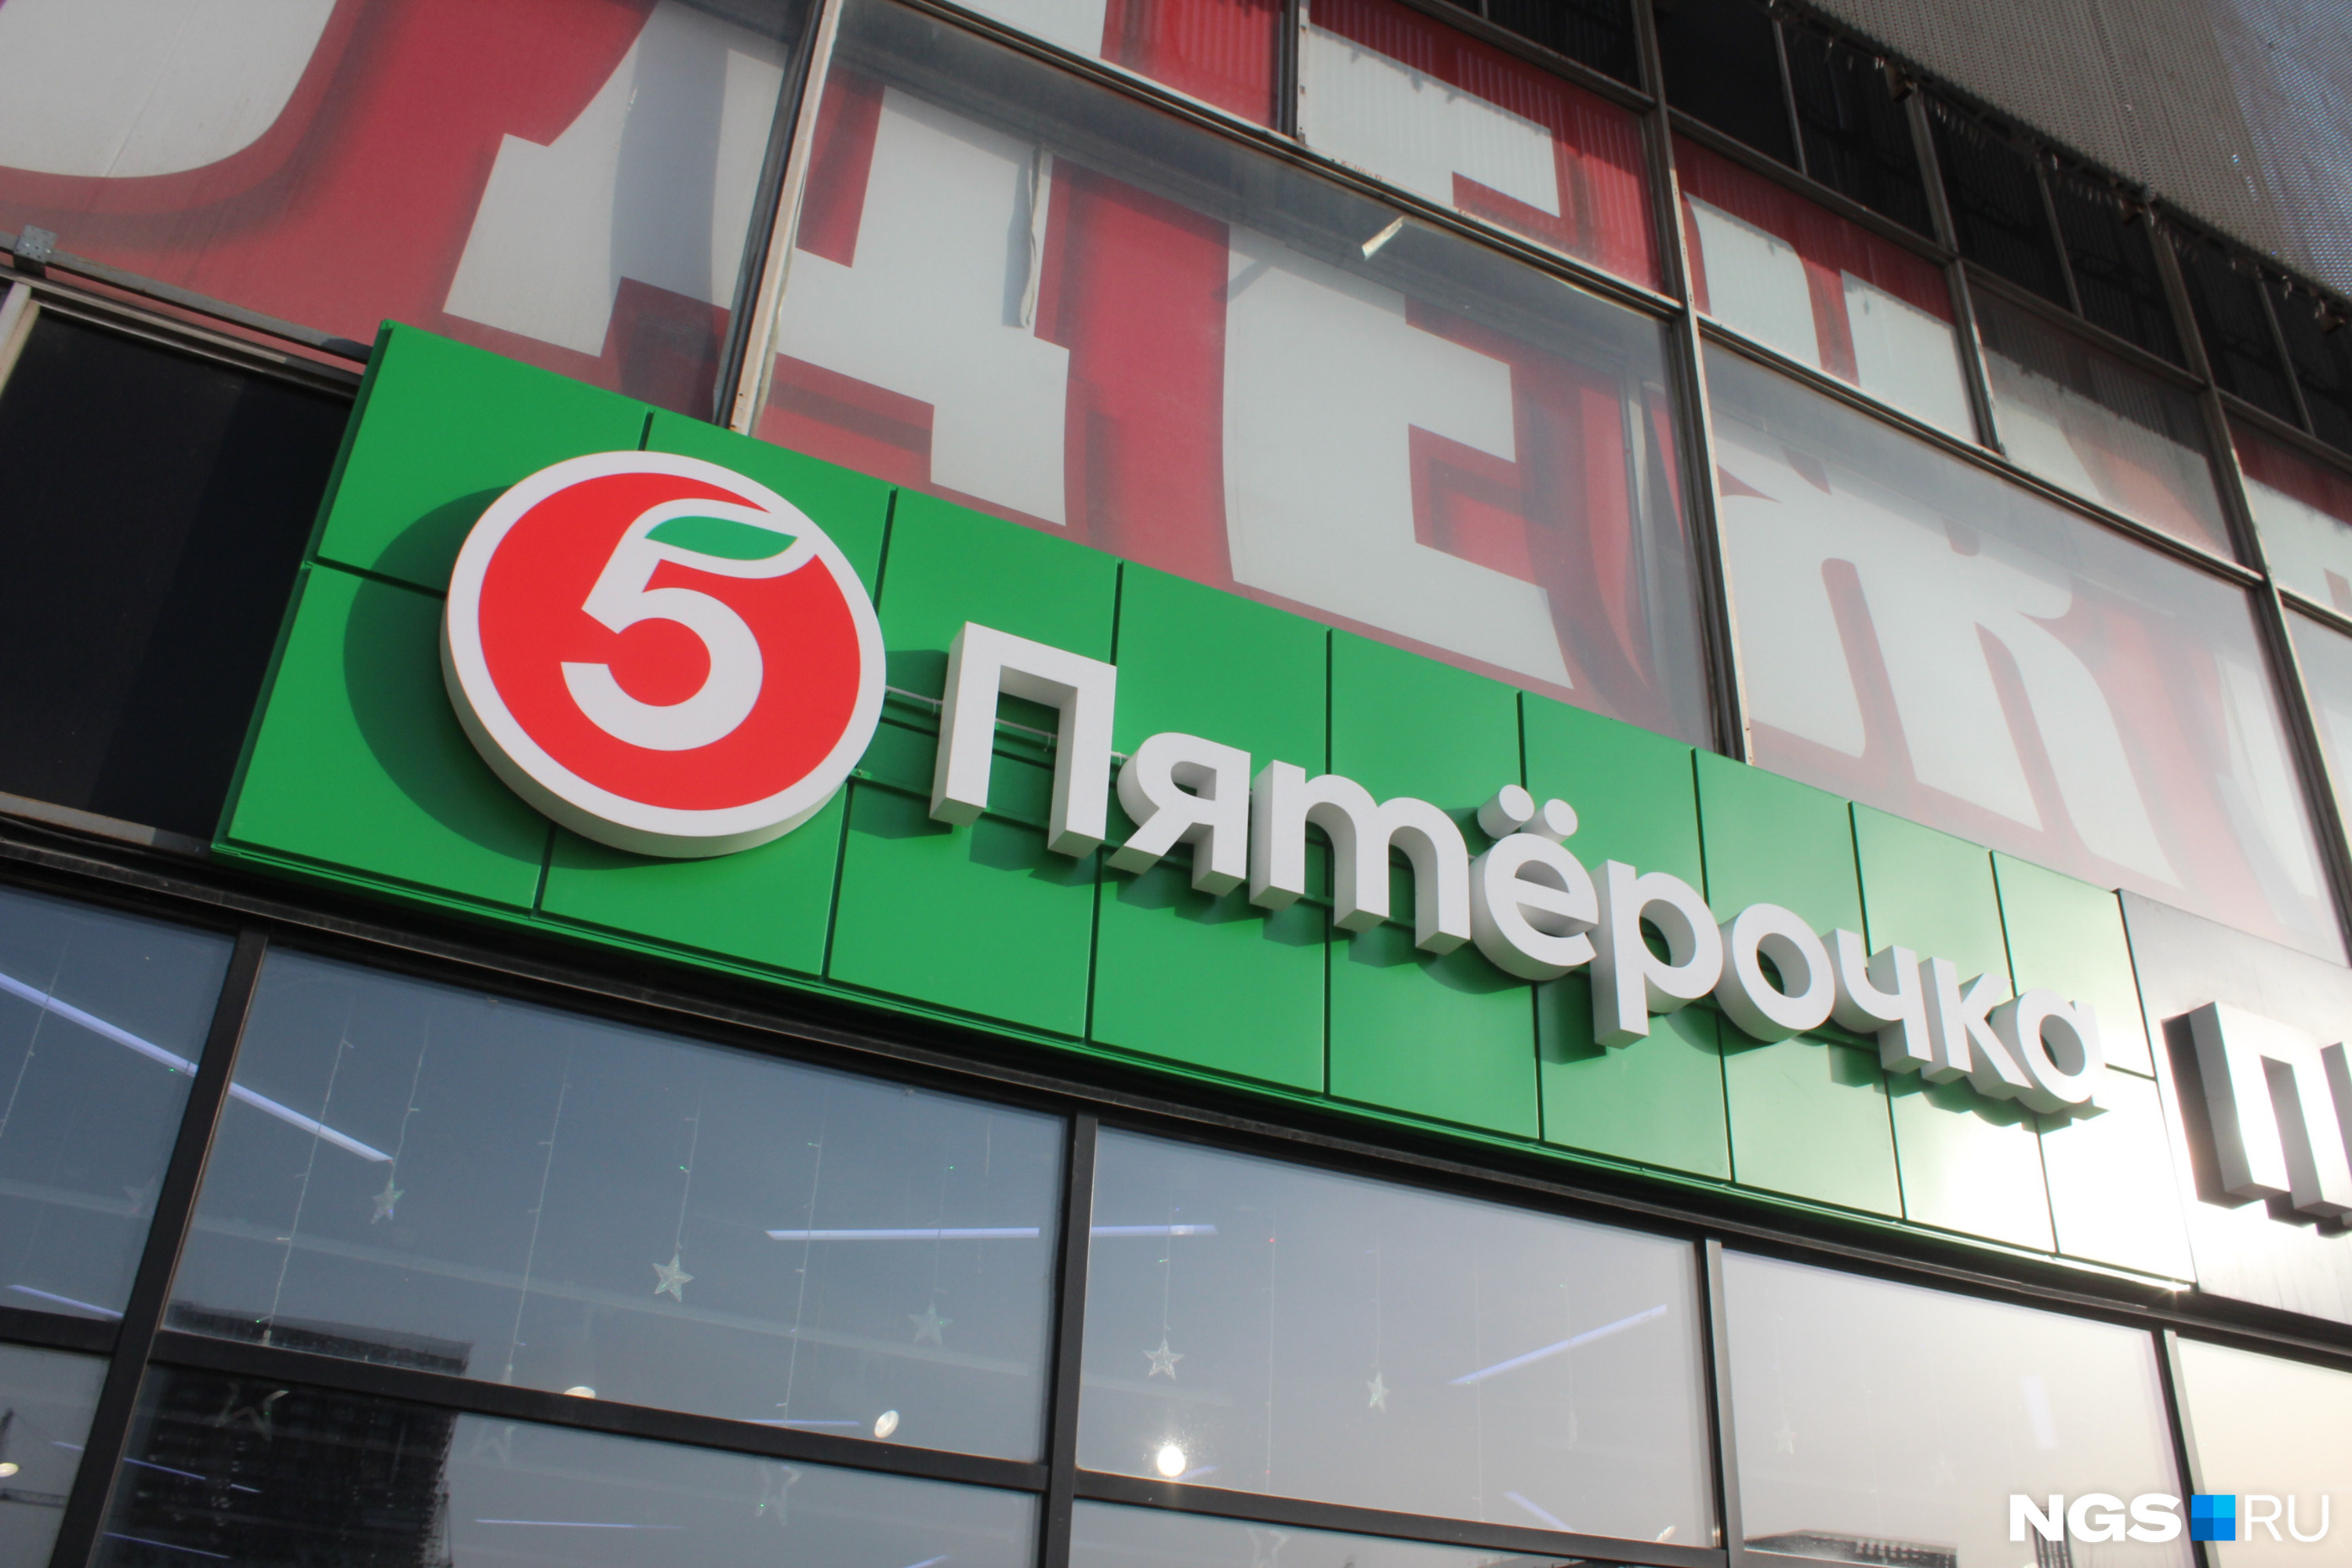 «Пятерочка» успела открыть в Новосибирске больше 200 магазинов